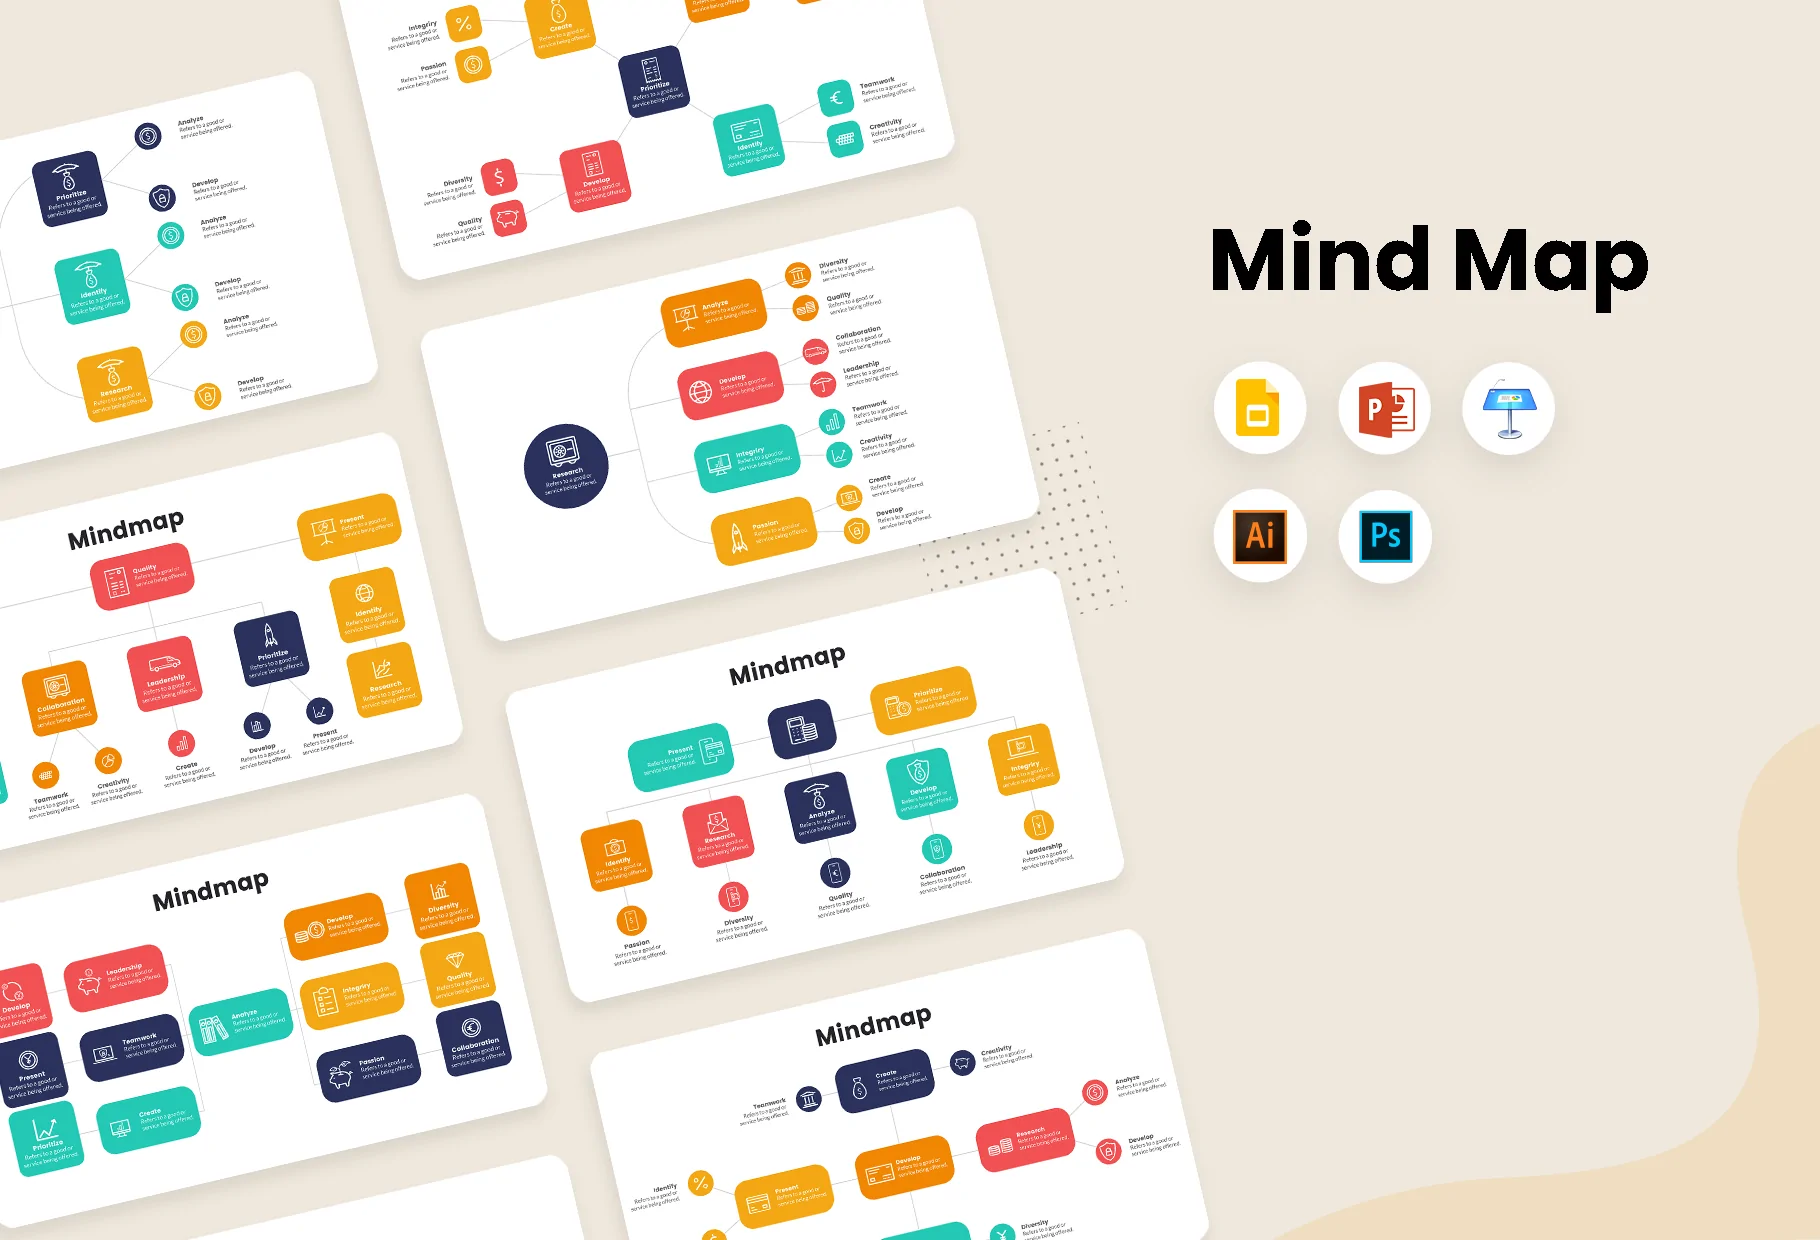 Mindmap infographics: Một bản sơ đồ tư duy đầy màu sắc và độc đáo sẽ giúp bạn lưu giữ và trình bày thông tin một cách rõ ràng và dễ hiểu. Xem hình ảnh liên quan và tận hưởng sự sáng tạo của bản đồ tư duy!